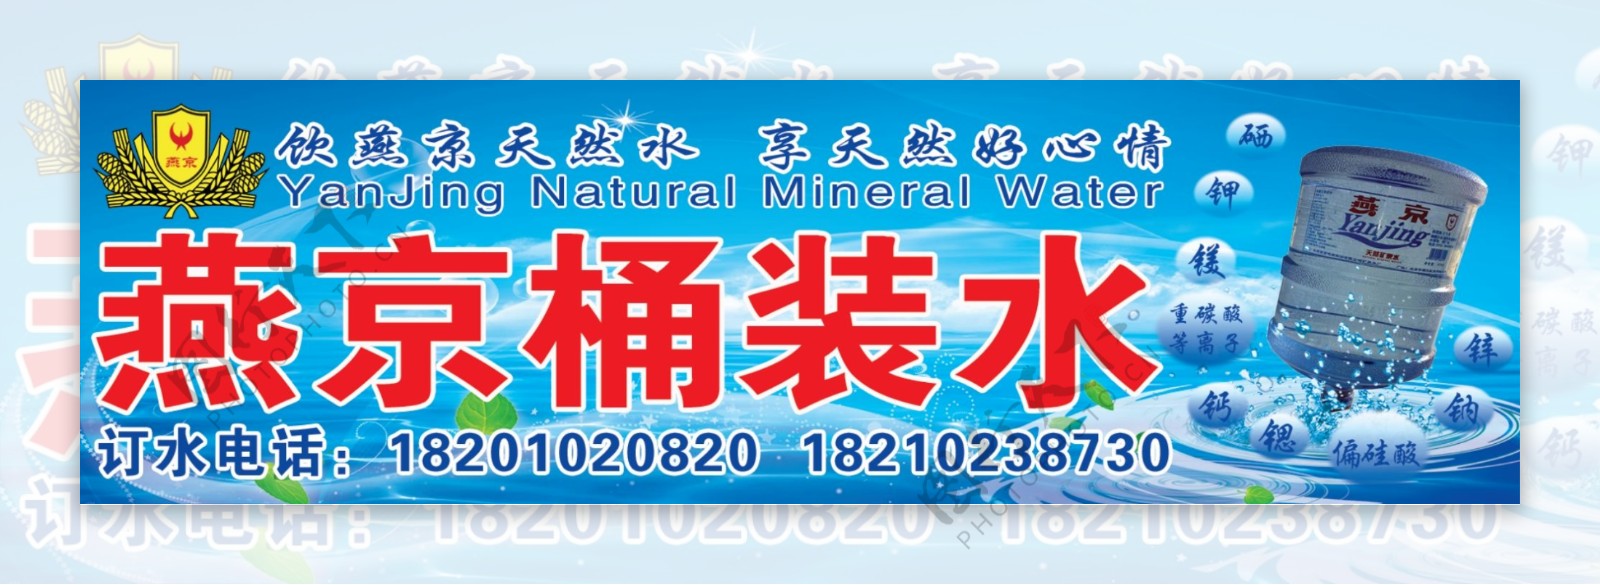 燕京天然水广告海报